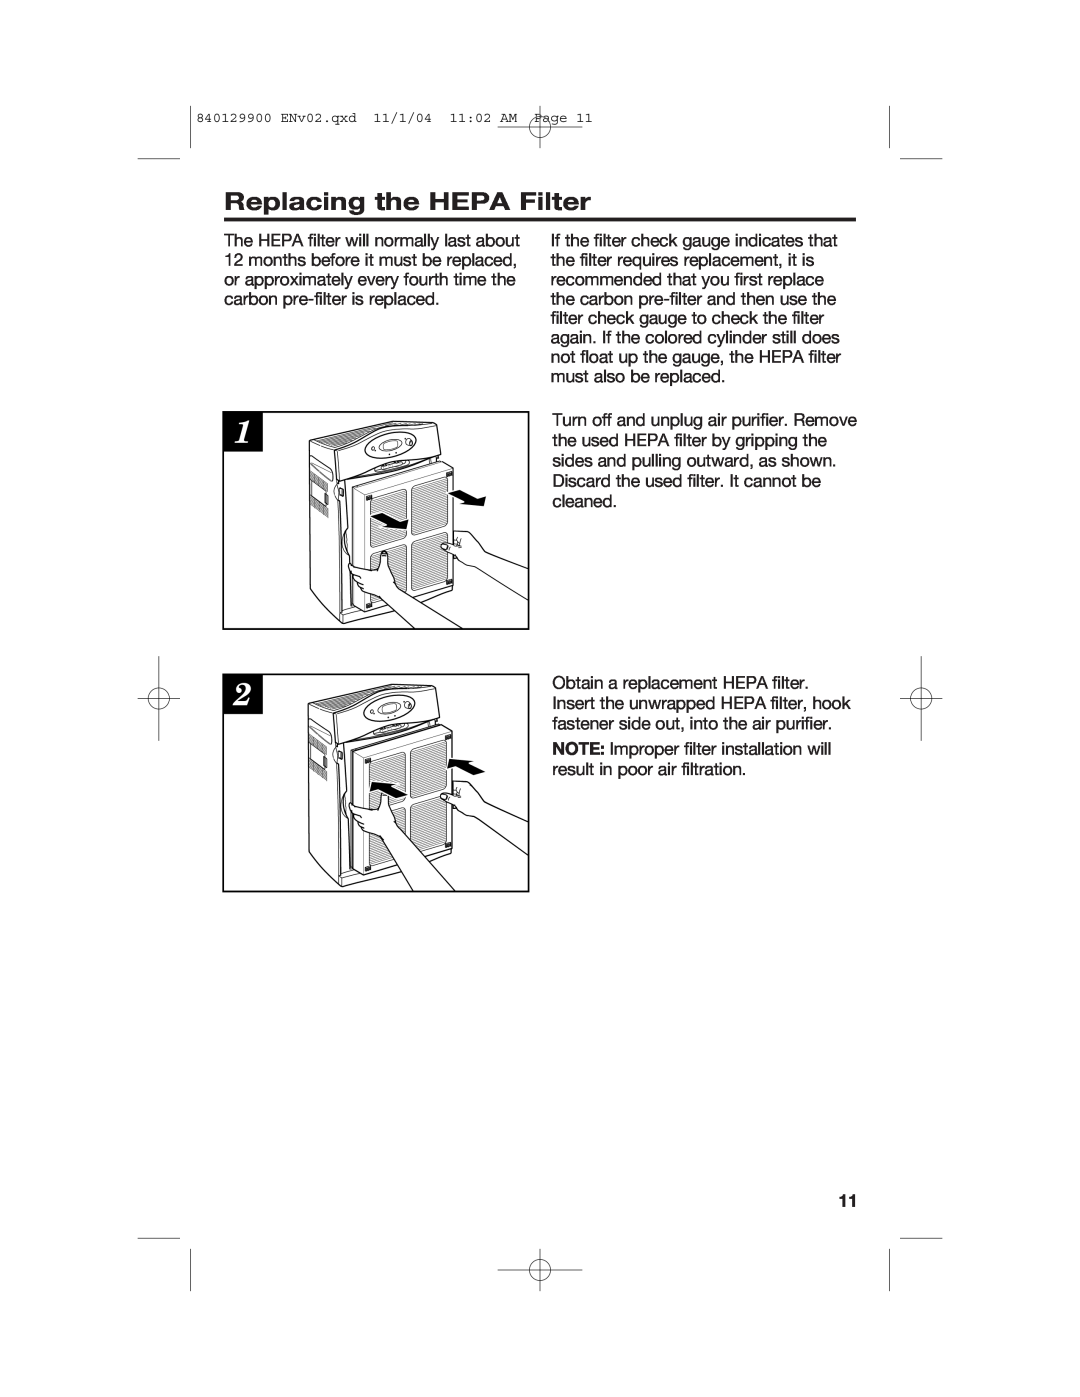 Hamilton Beach 04161, 04162, 04160 manual Replacing the HEPA Filter 